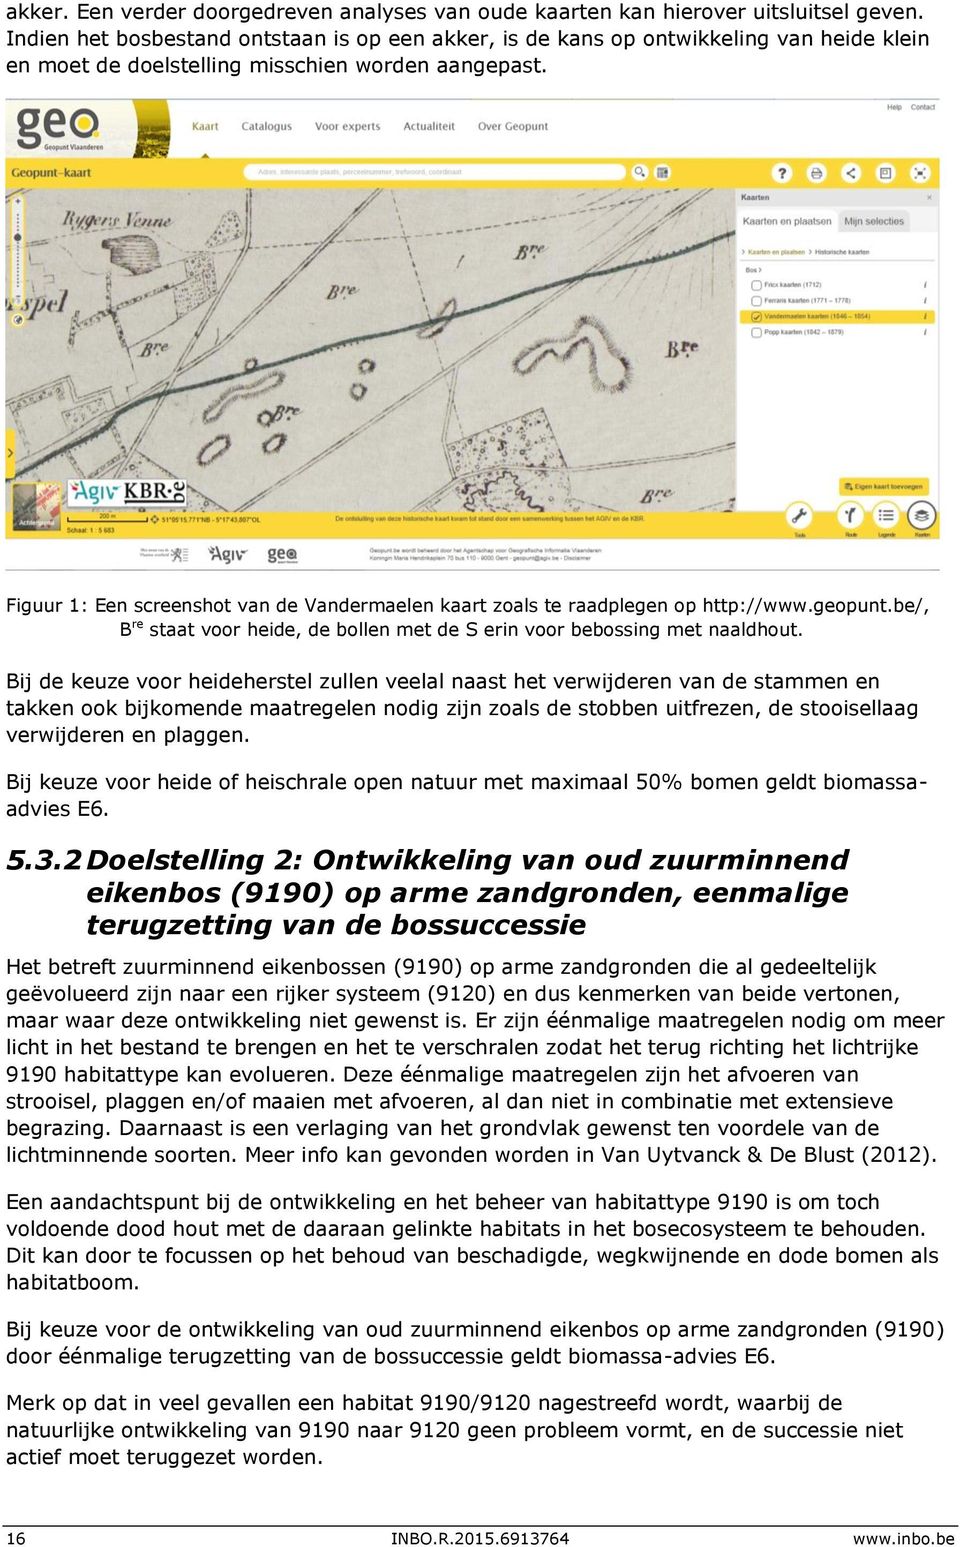 Figuur 1: Een screenshot van de Vandermaelen kaart zoals te raadplegen op http://www.geopunt.be/, B re staat voor heide, de bollen met de S erin voor bebossing met naaldhout.